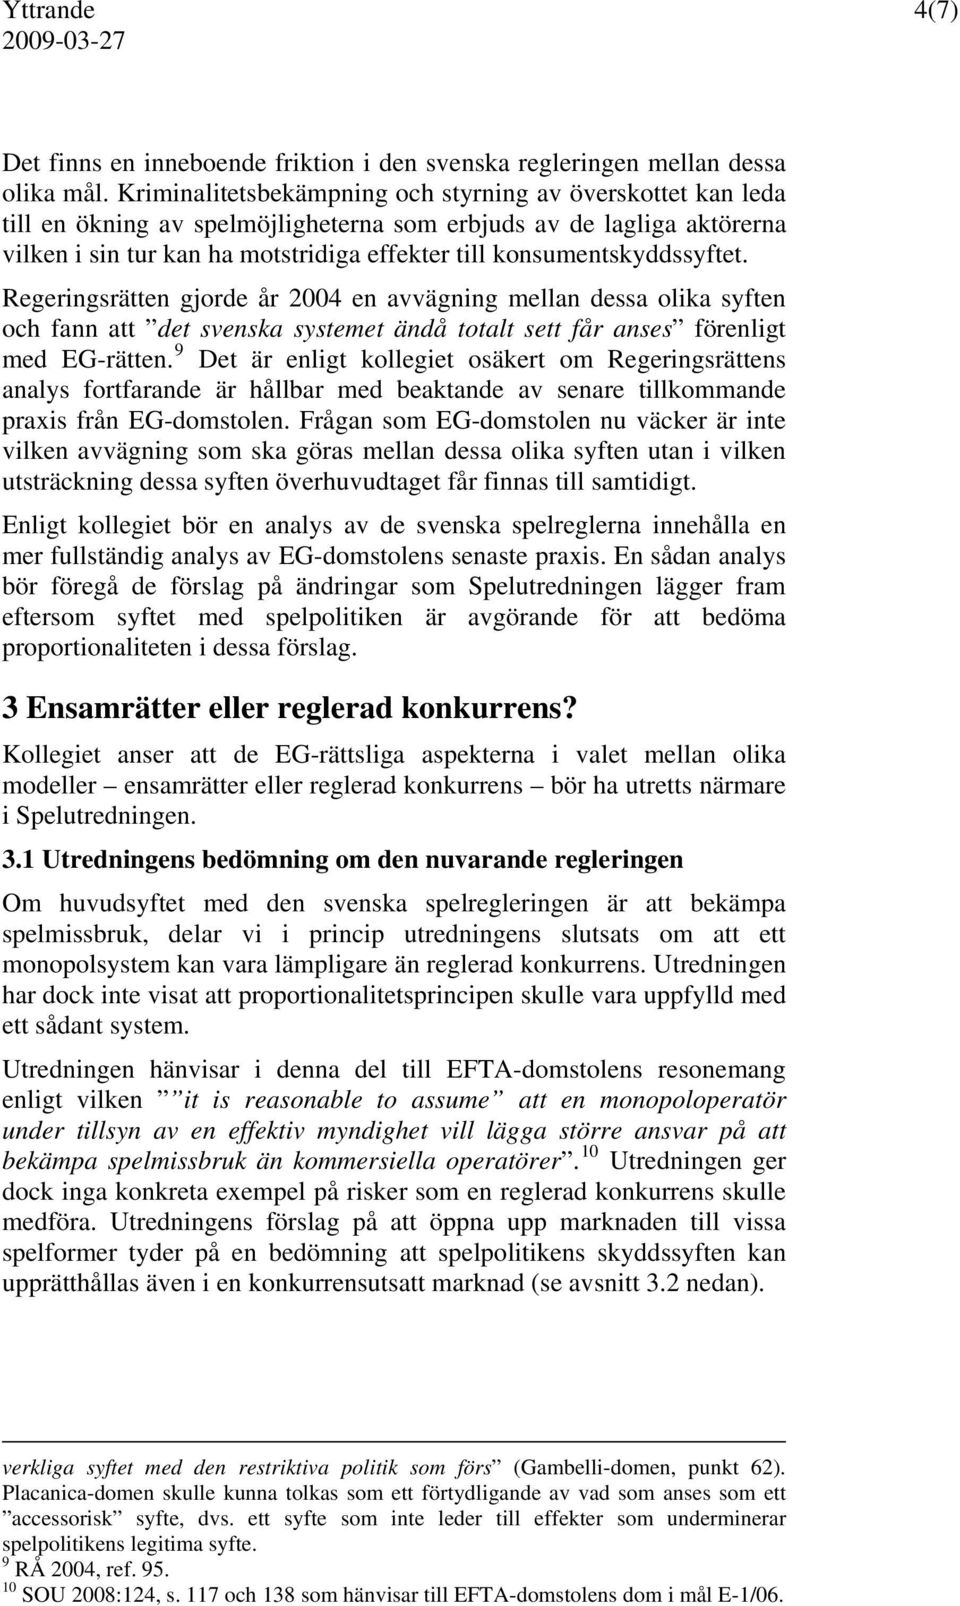 konsumentskyddssyftet. Regeringsrätten gjorde år 2004 en avvägning mellan dessa olika syften och fann att det svenska systemet ändå totalt sett får anses förenligt med EG-rätten.